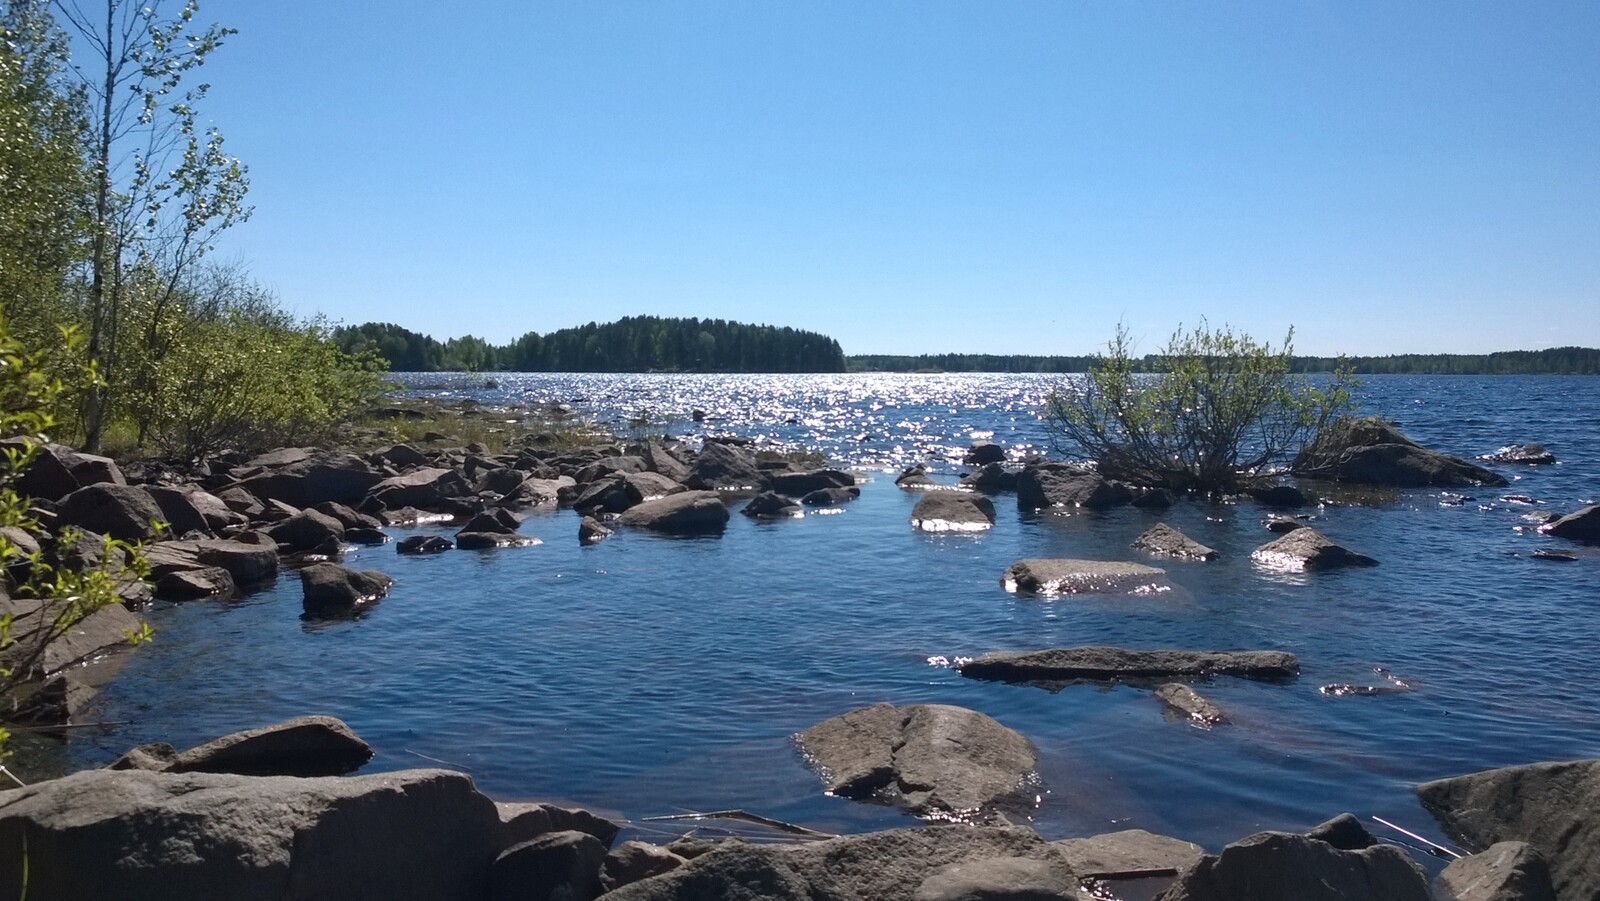 Rantaveden kivikosta aukeaa kesäinen järvimaisema. Veden pinta kimmeltää auringonvalossa.